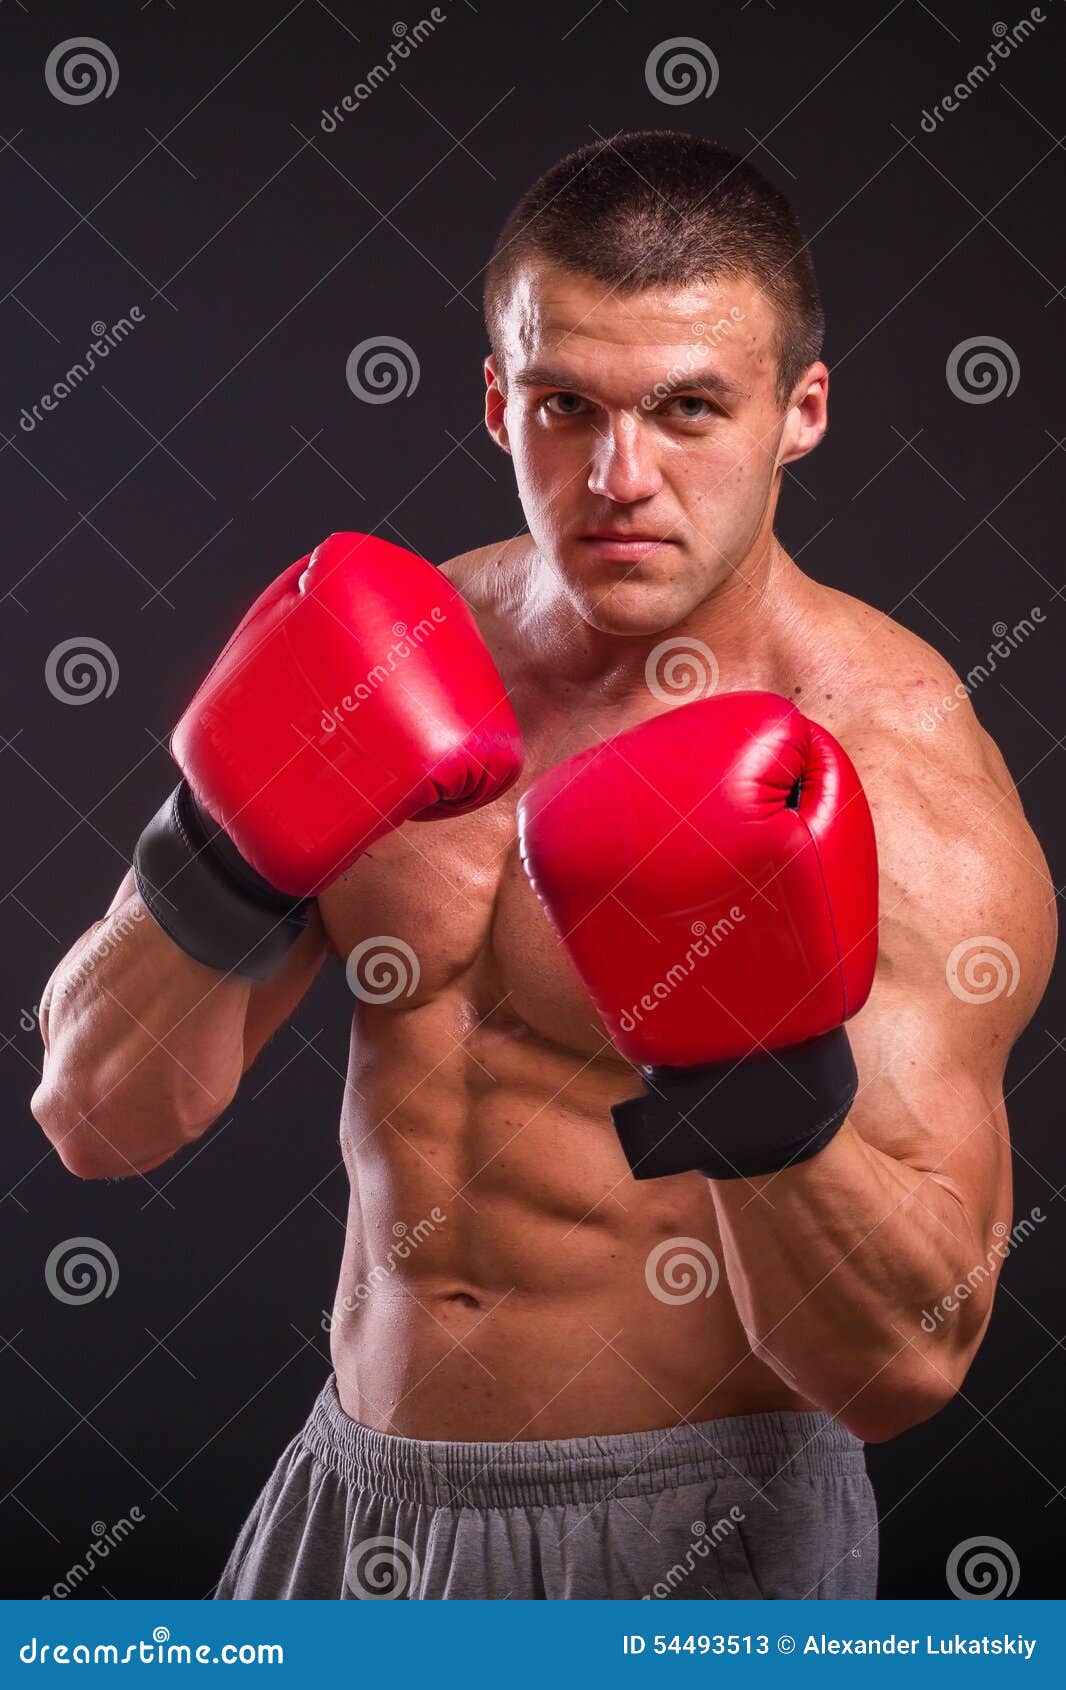 Боксеры были сильнее. Боксёр человек. Мускулы боксера. Мышцы боксера. Сильный боксер.